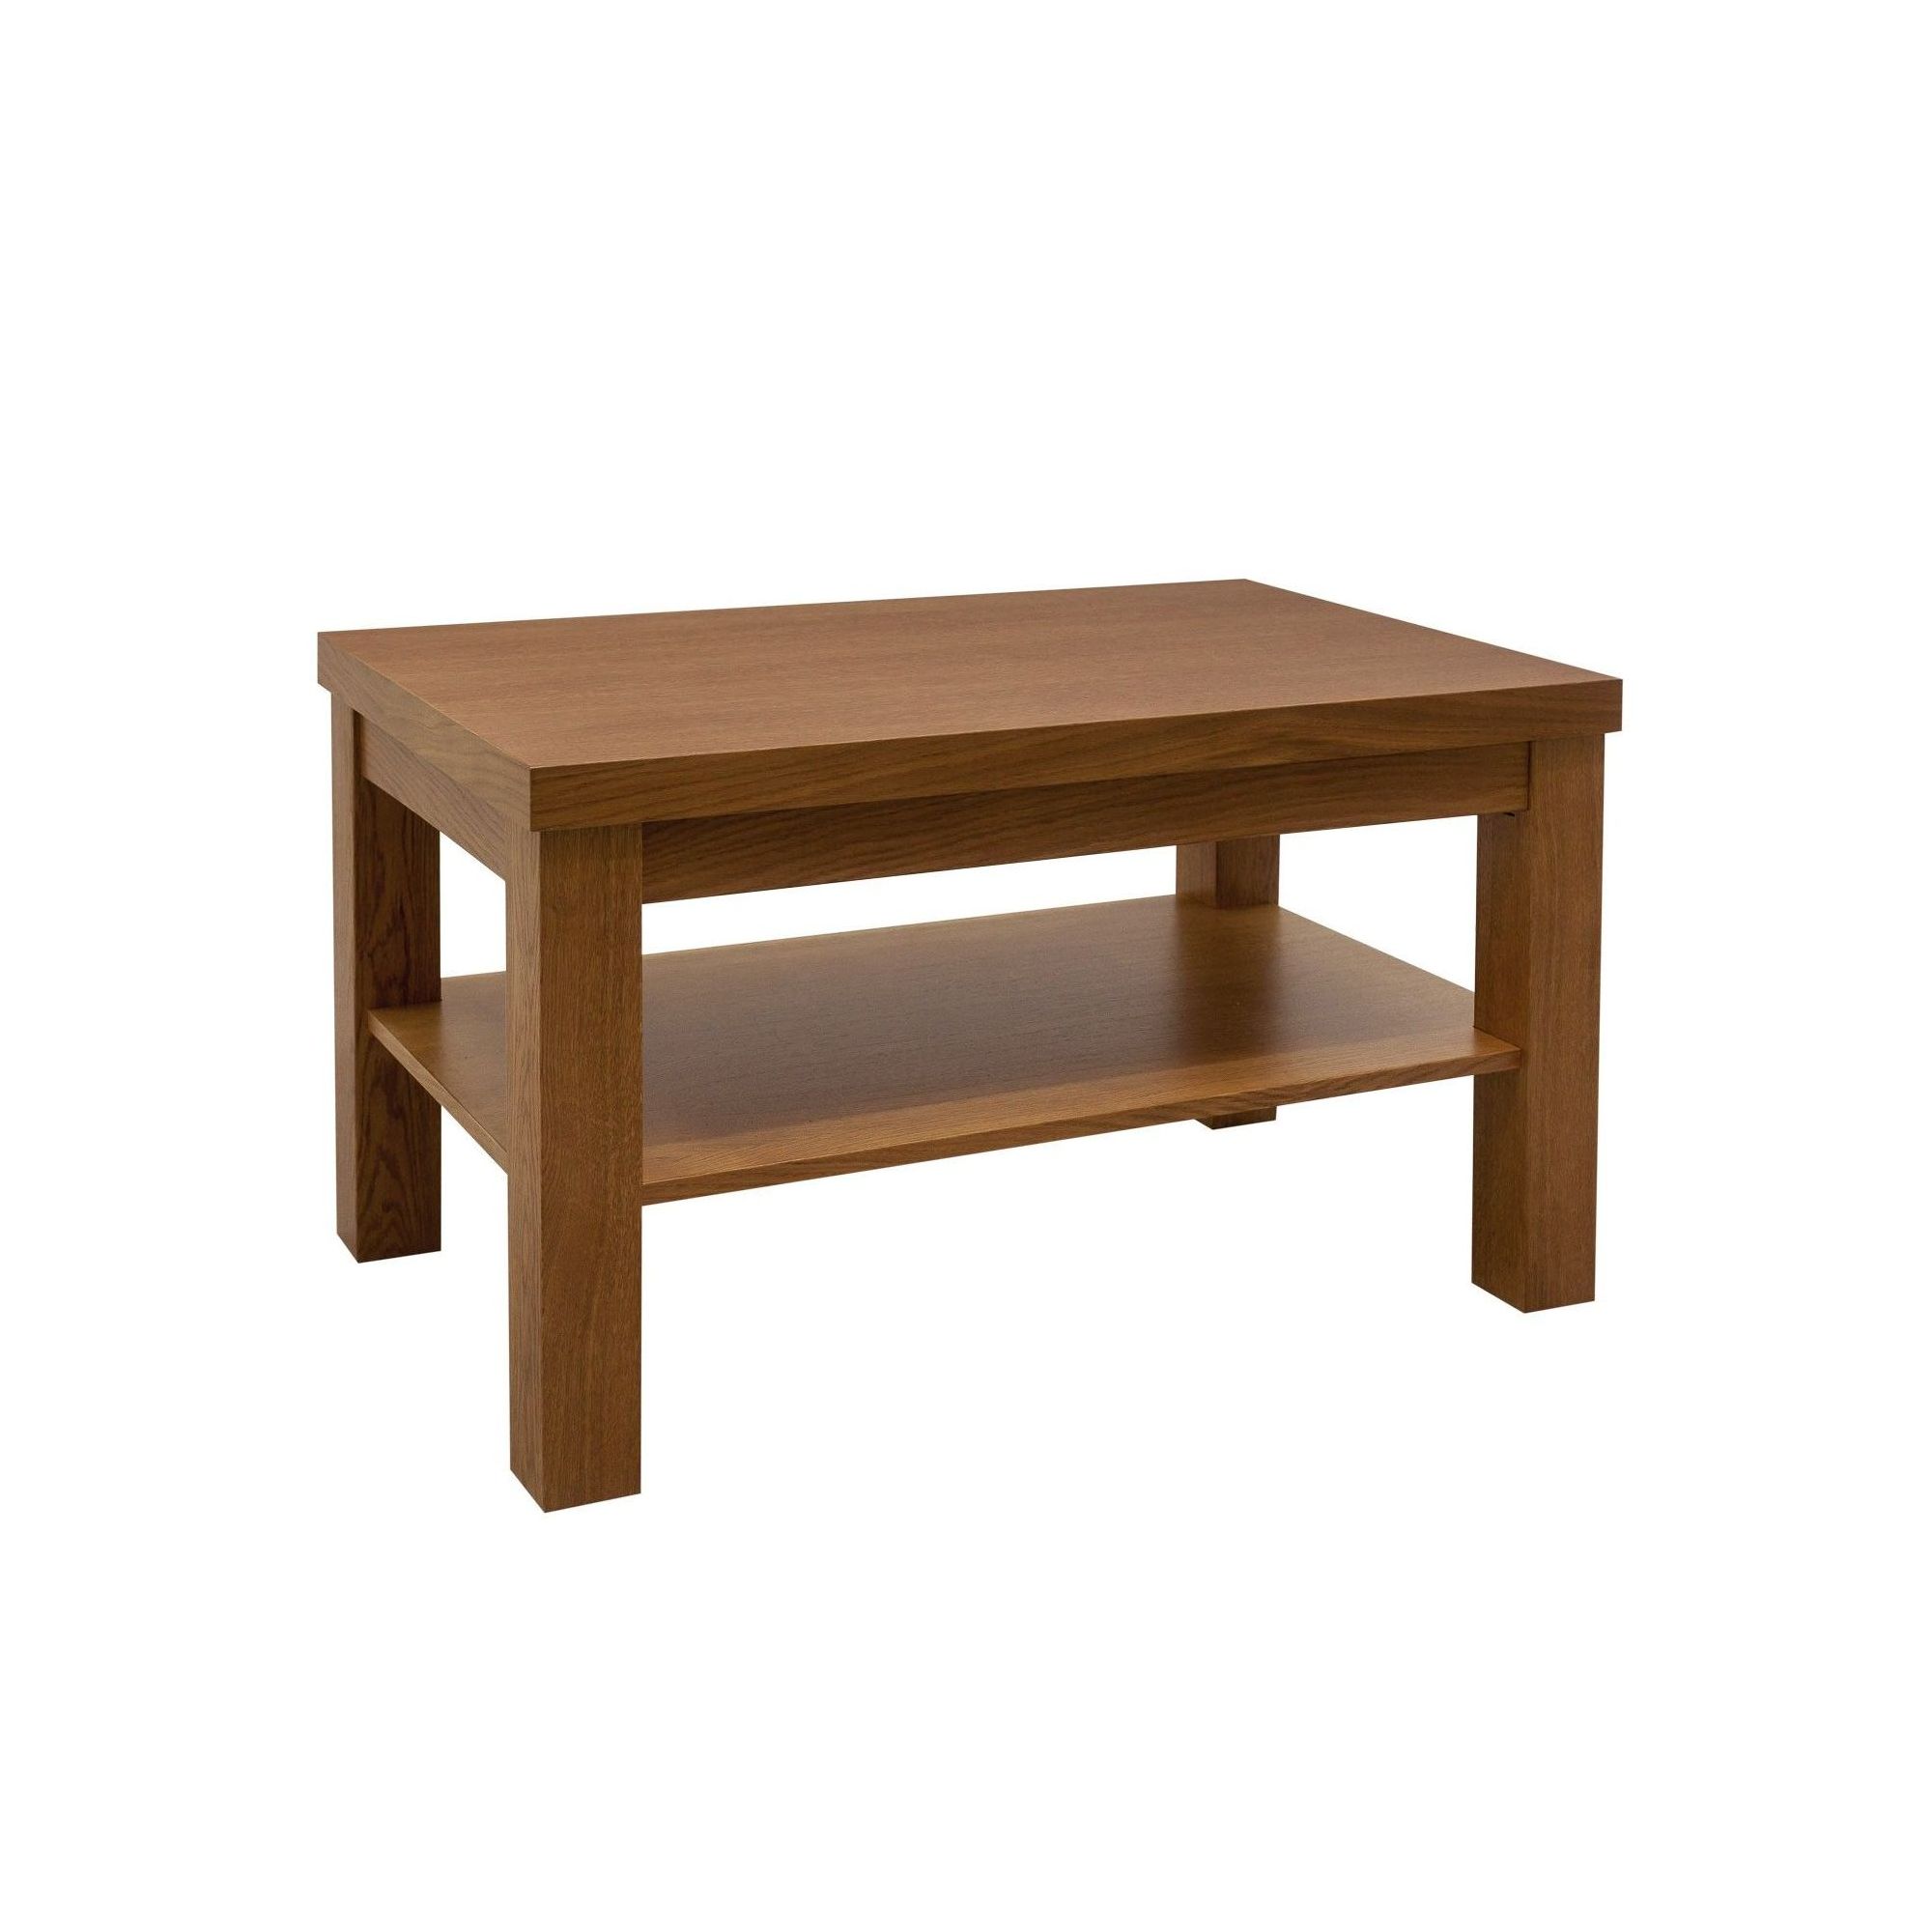 Klasyczny mały stolik ŁS5 drewniana ława z półką